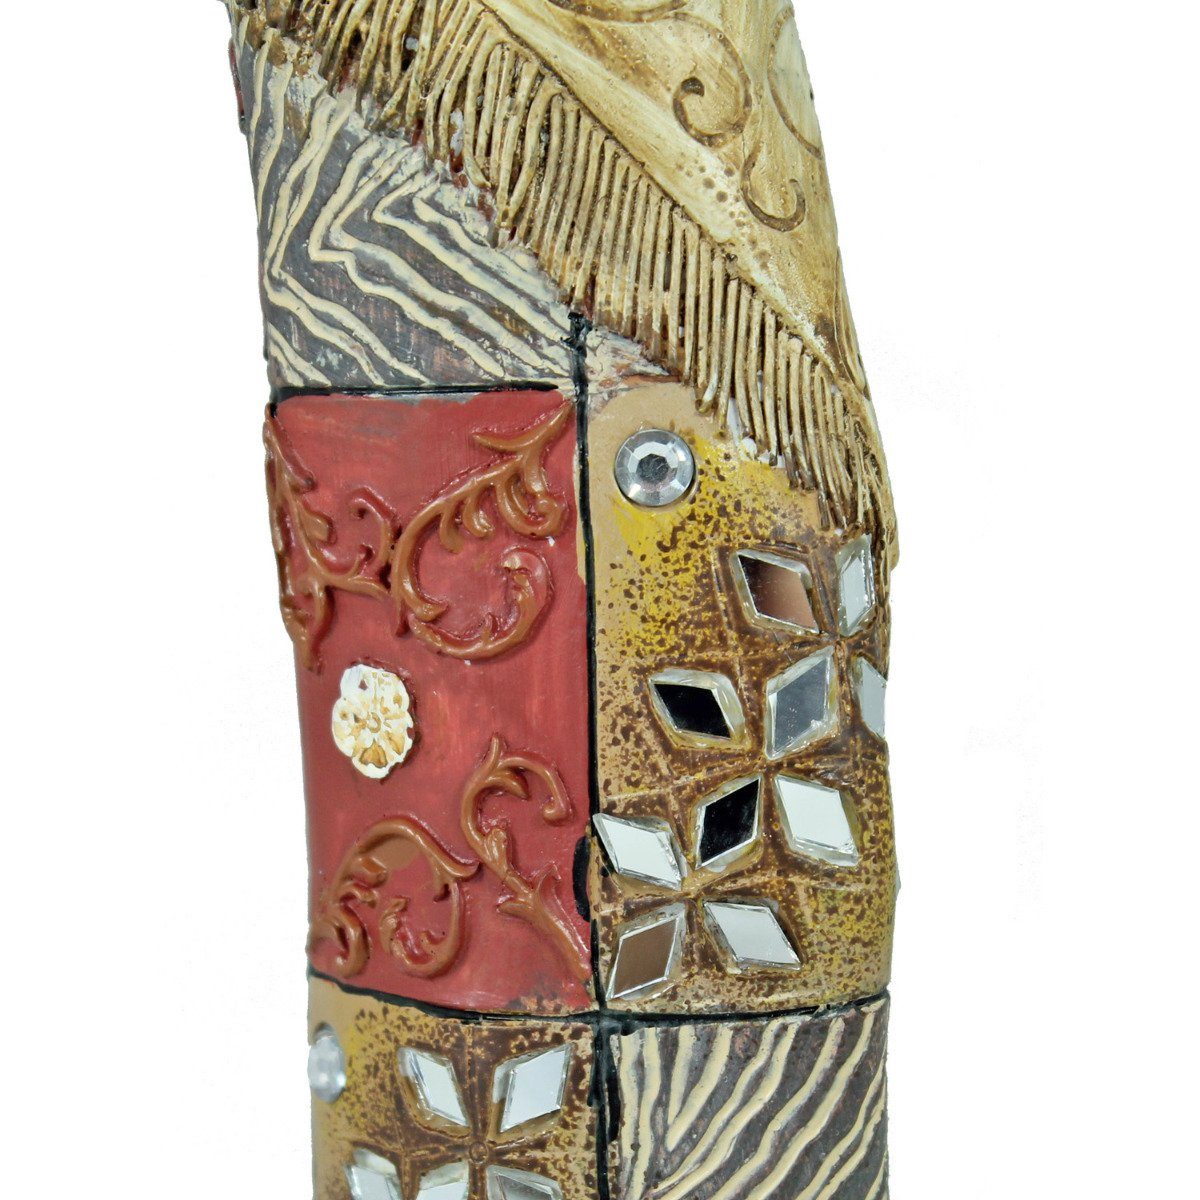 Afrikanische bunten Afrika einem in handbemalt Deko Kleid Figur Afrikafigur Frau Dekofiguren, colourliving